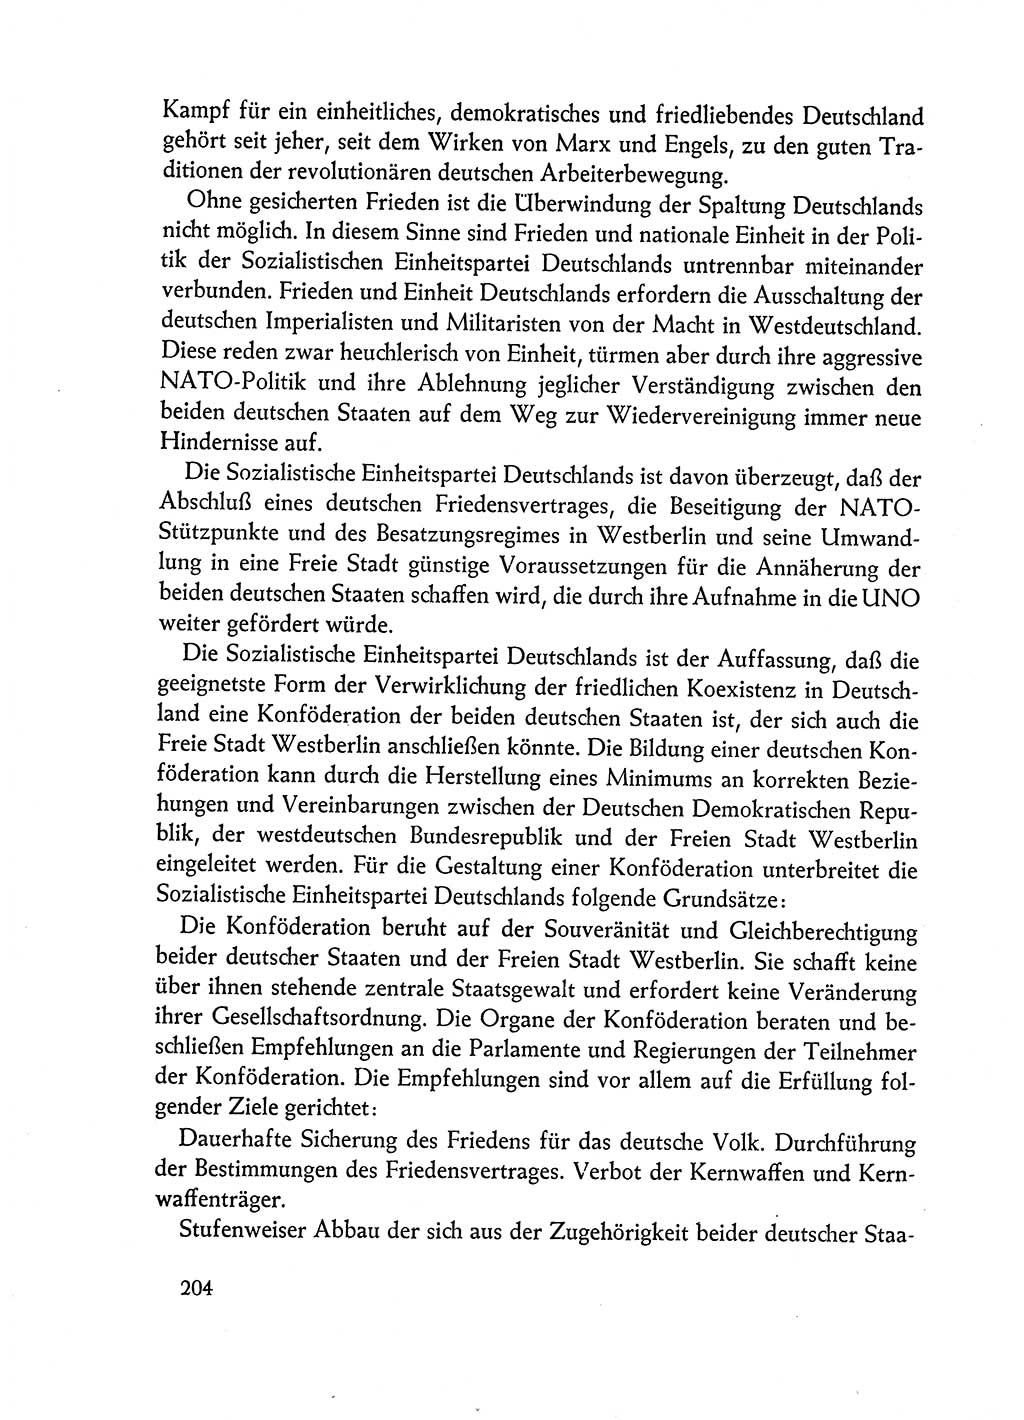 Dokumente der Sozialistischen Einheitspartei Deutschlands (SED) [Deutsche Demokratische Republik (DDR)] 1962-1963, Seite 204 (Dok. SED DDR 1962-1963, S. 204)